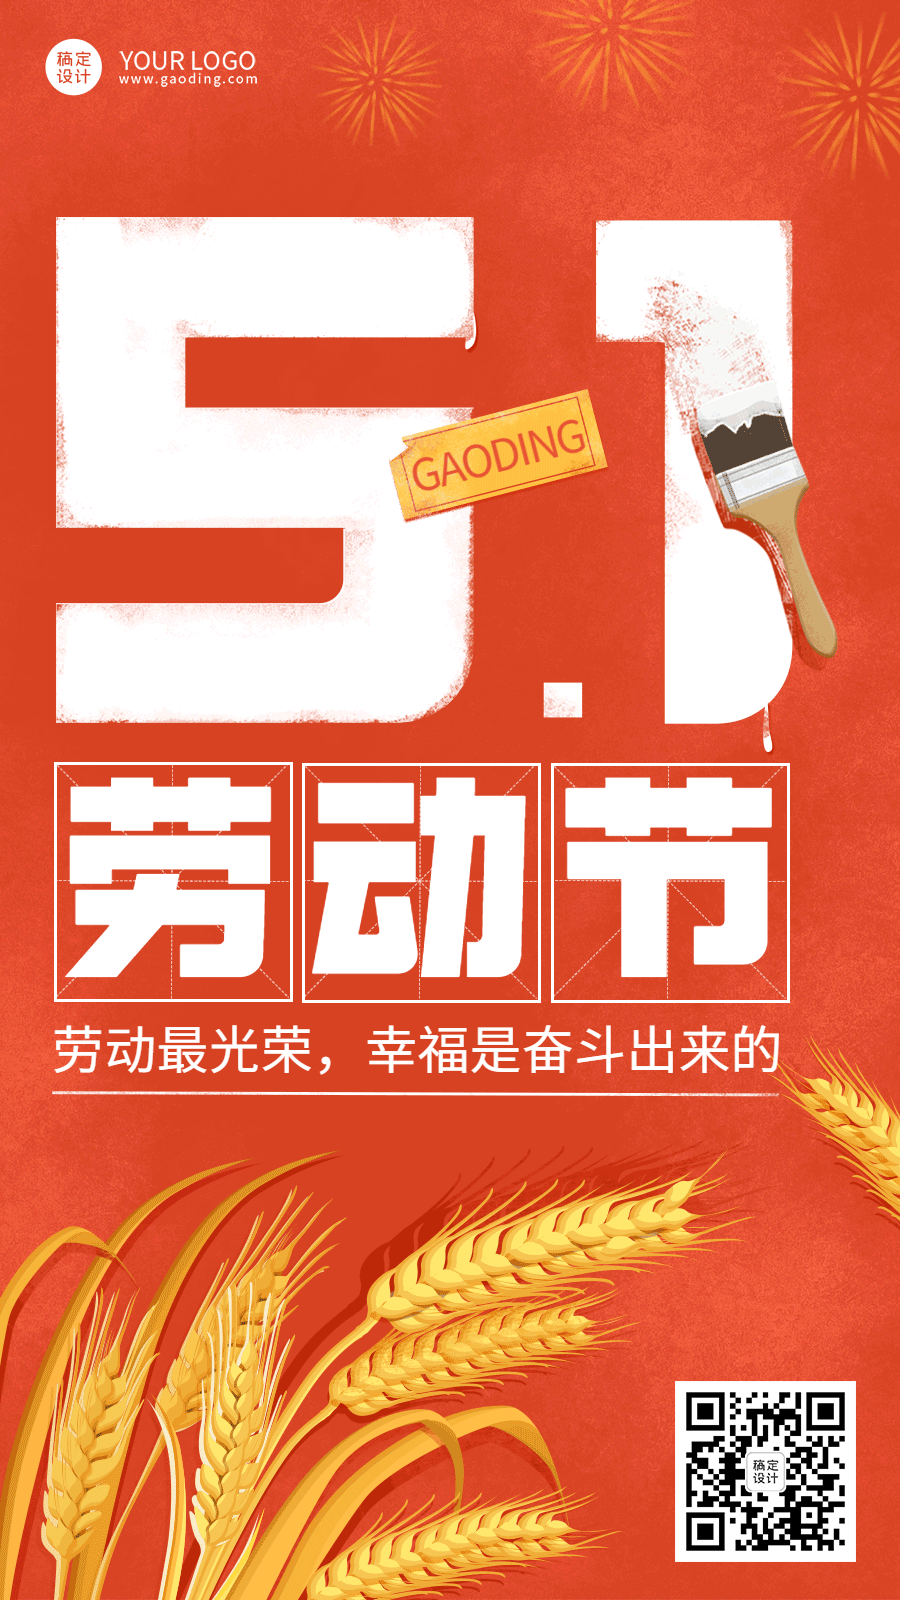 劳动节节日祝福麦穗五一插画动态手机海报